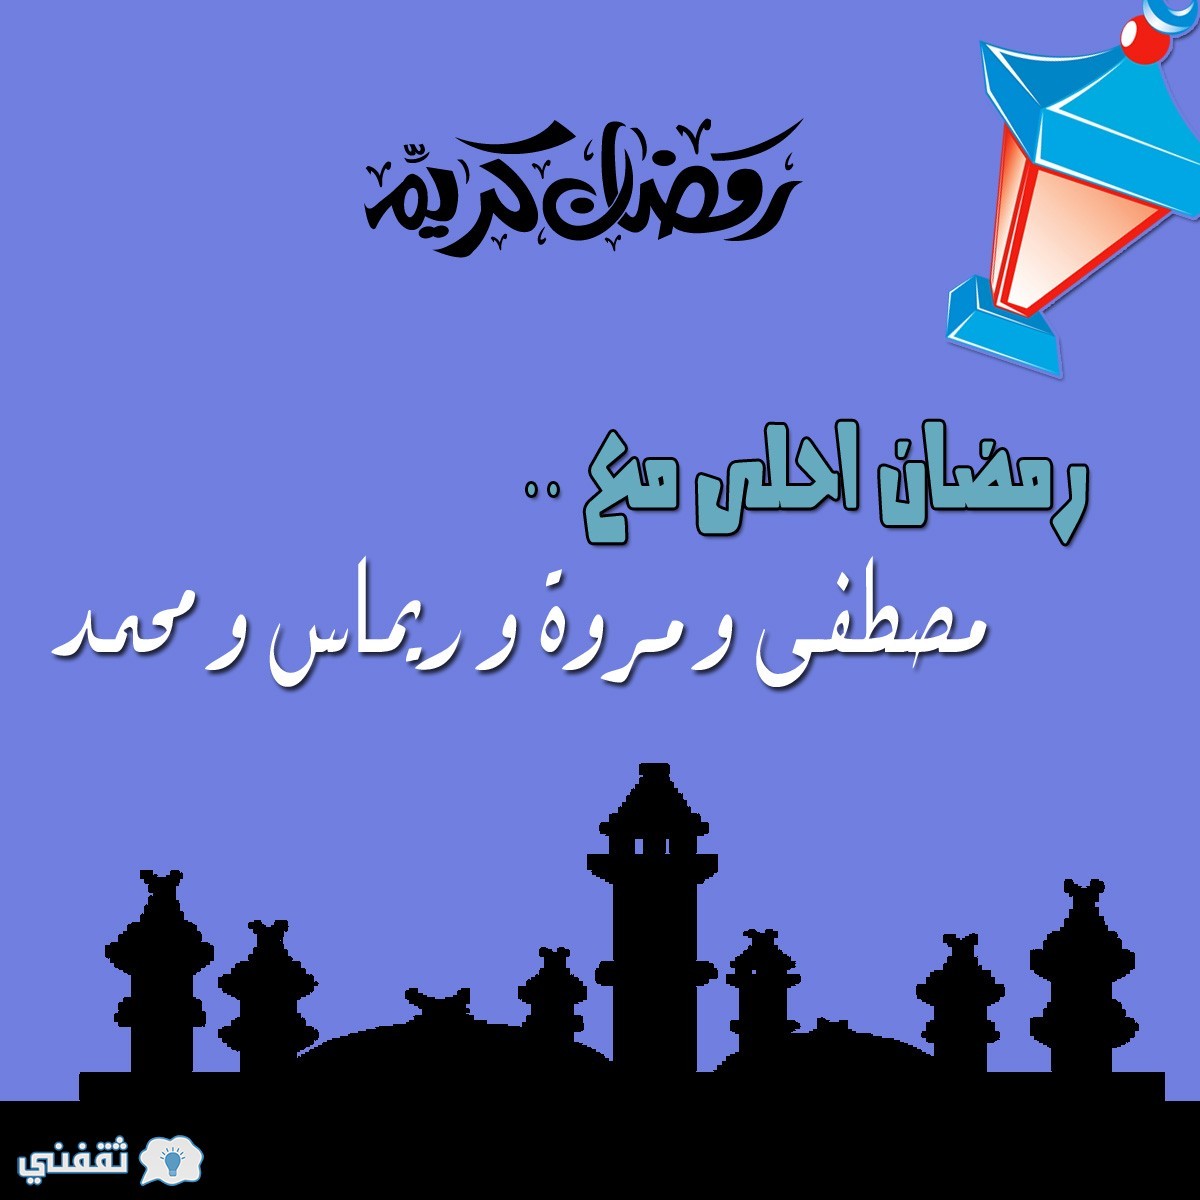 رمضان احلى مع مصطفى و مروة و ريماس و محمد